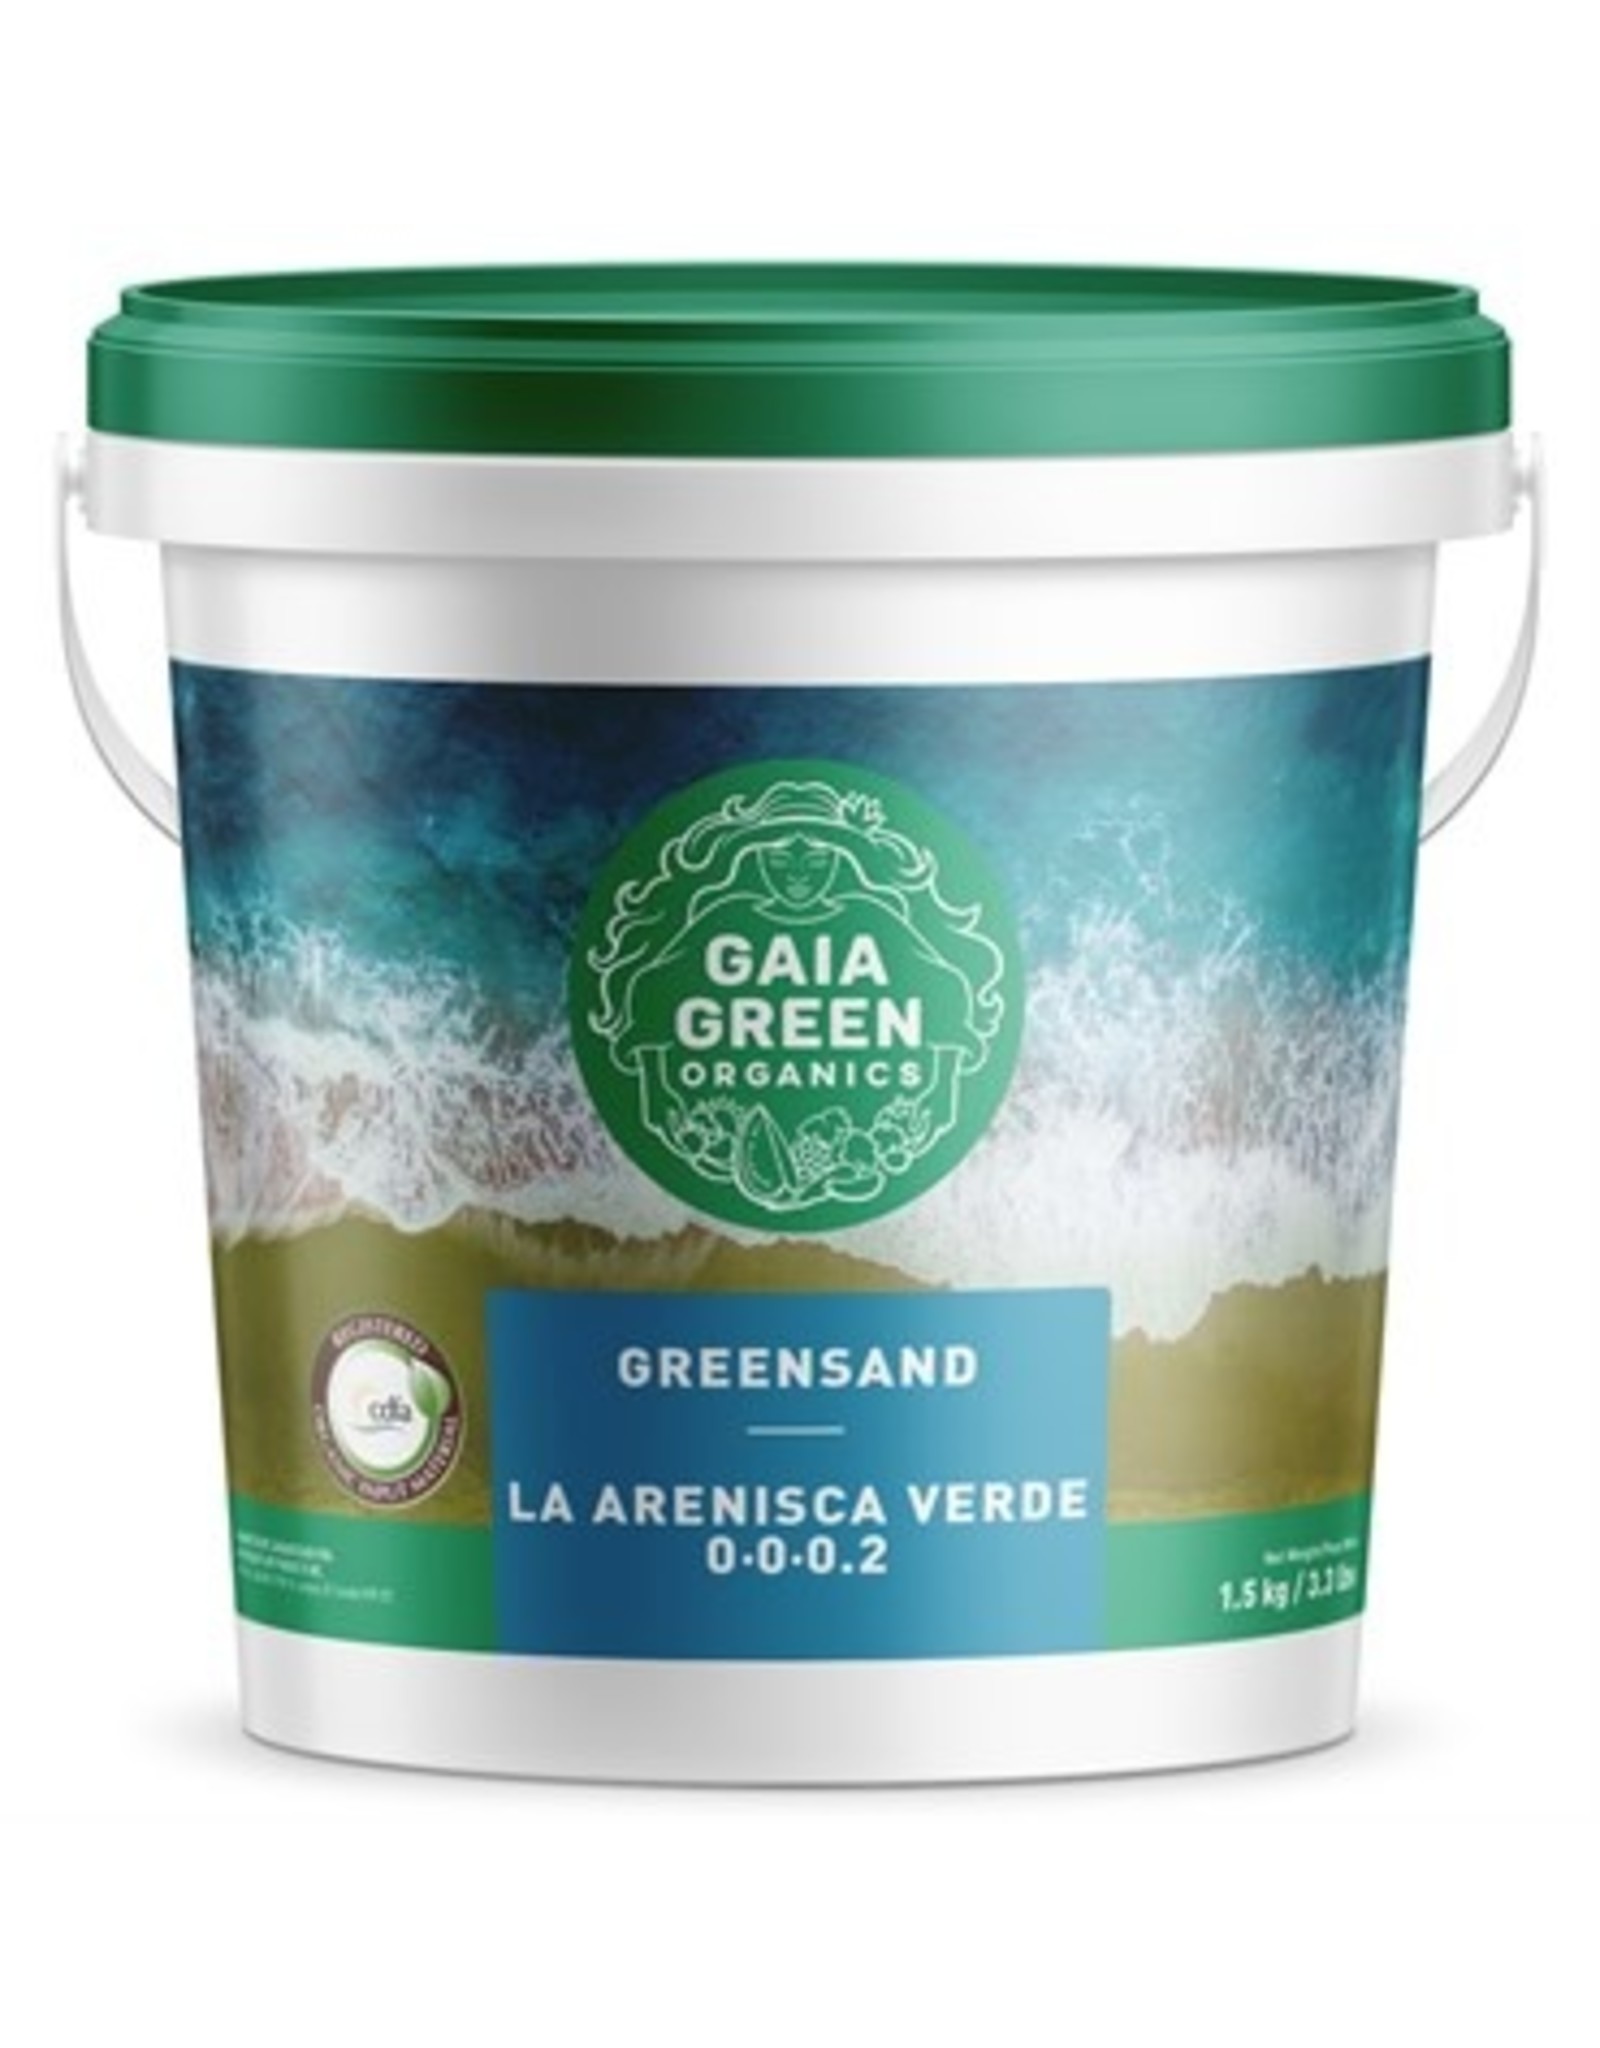 Gaia Green Gaia Green Greensand 0-0-0.2 1.5kg